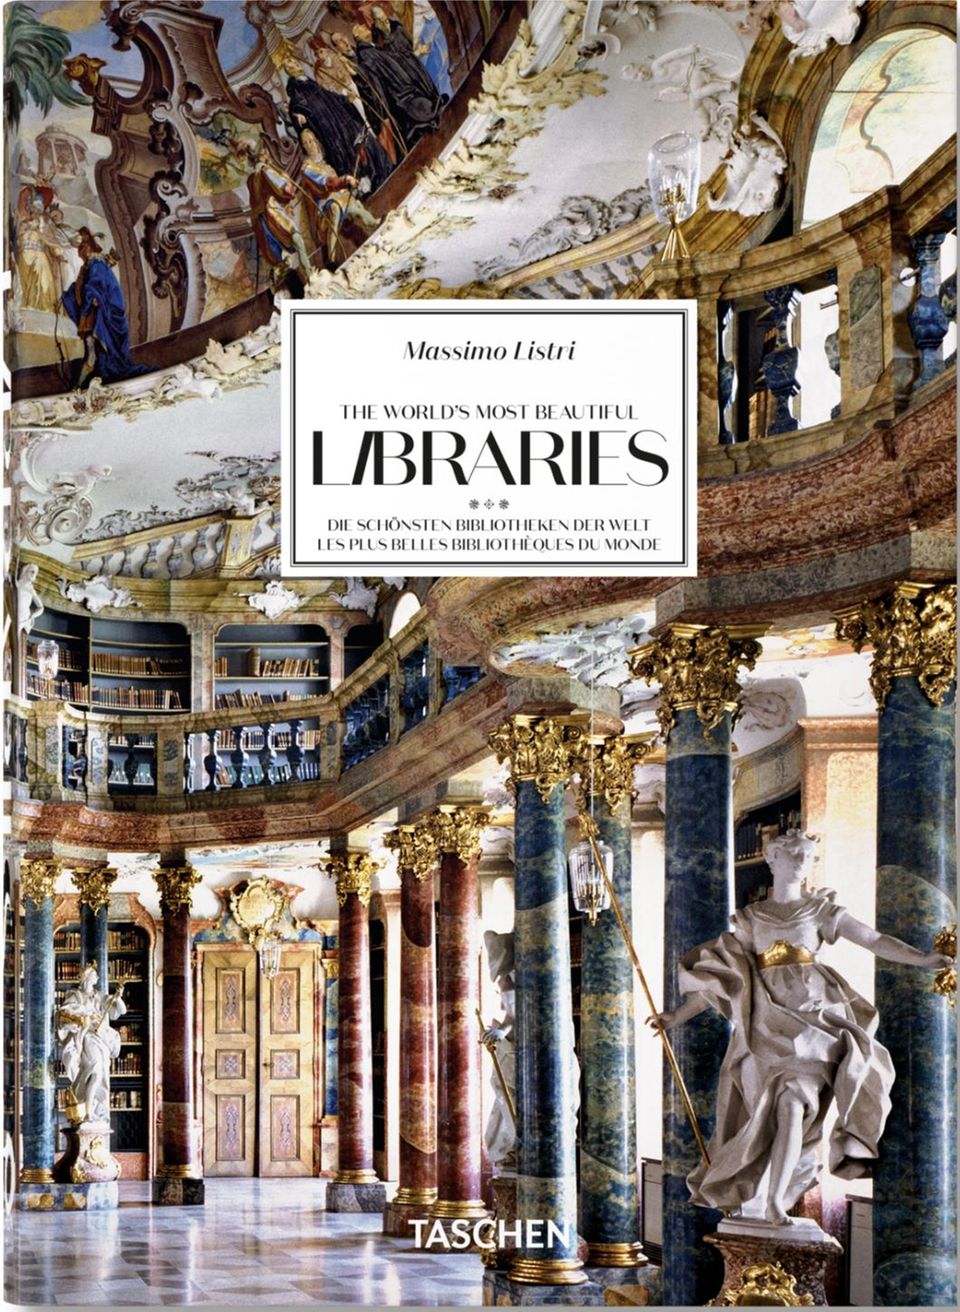 "Massimo Listri. The World’s Most Beautiful Libraries", Hardcover, 512 Seiten, erschienen im Taschen Verlag. Preis: 25 Euro. 